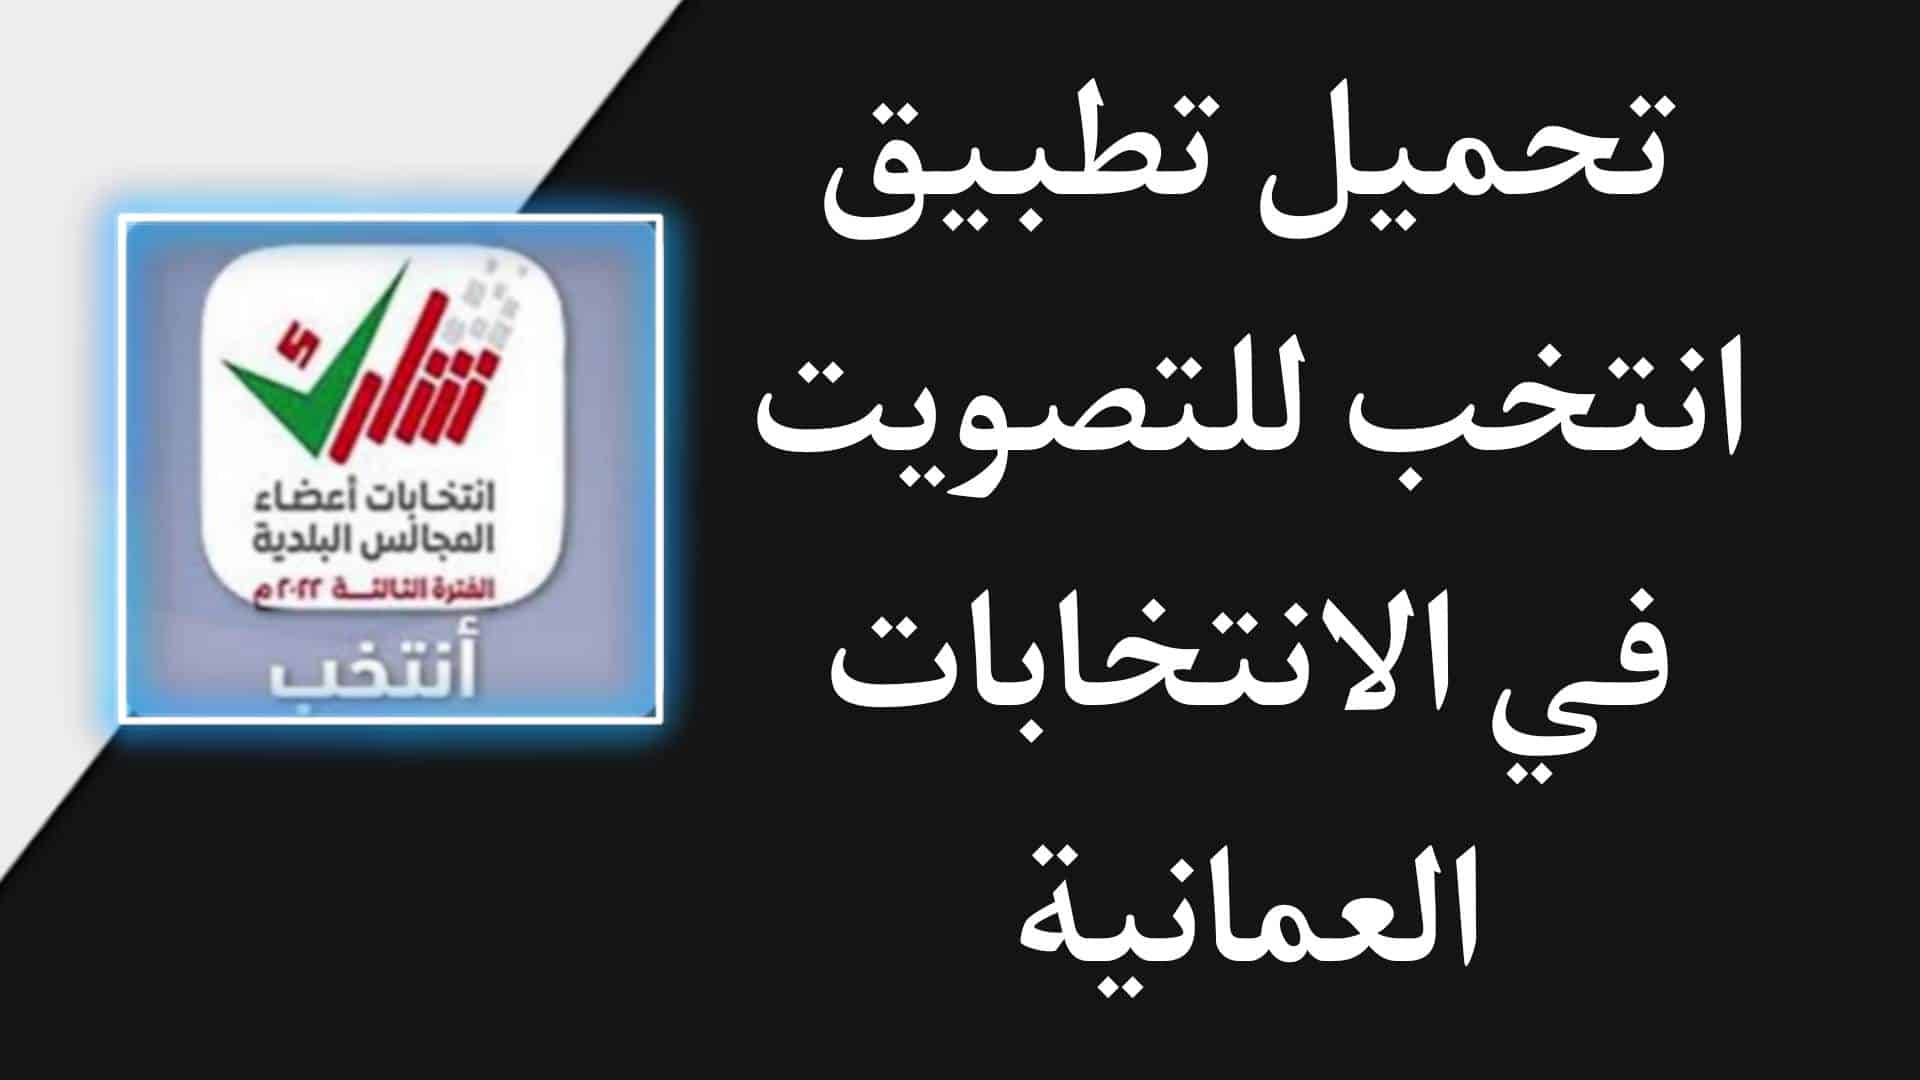 تنزيل تطبيق انتخب 2022 للاندرويد للتصويت في انتخابات عمان